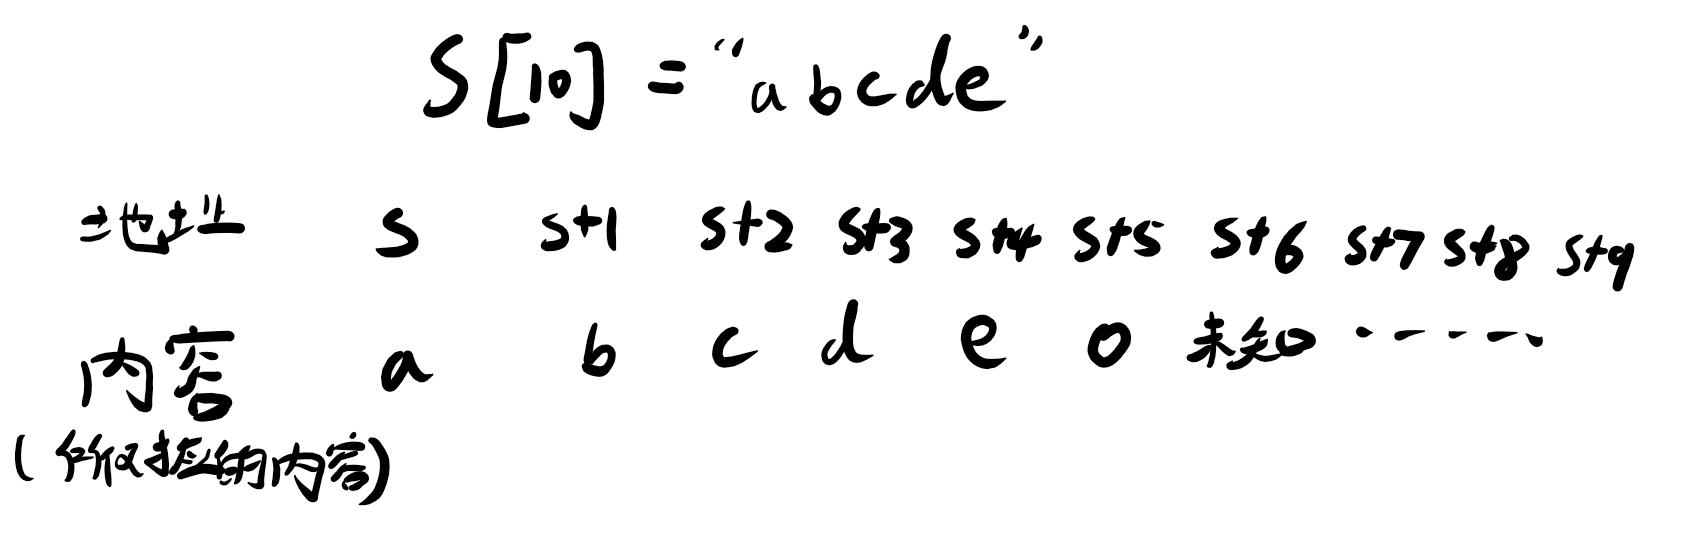 字符串长度函数4